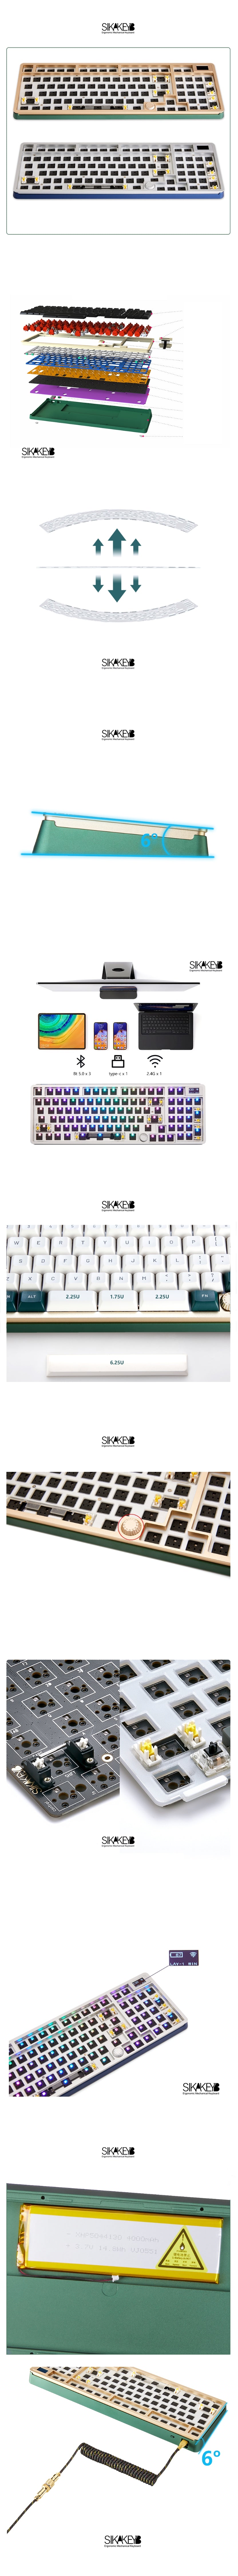 SIKAKEYB SK8 Gasket Keyboard Kit-1